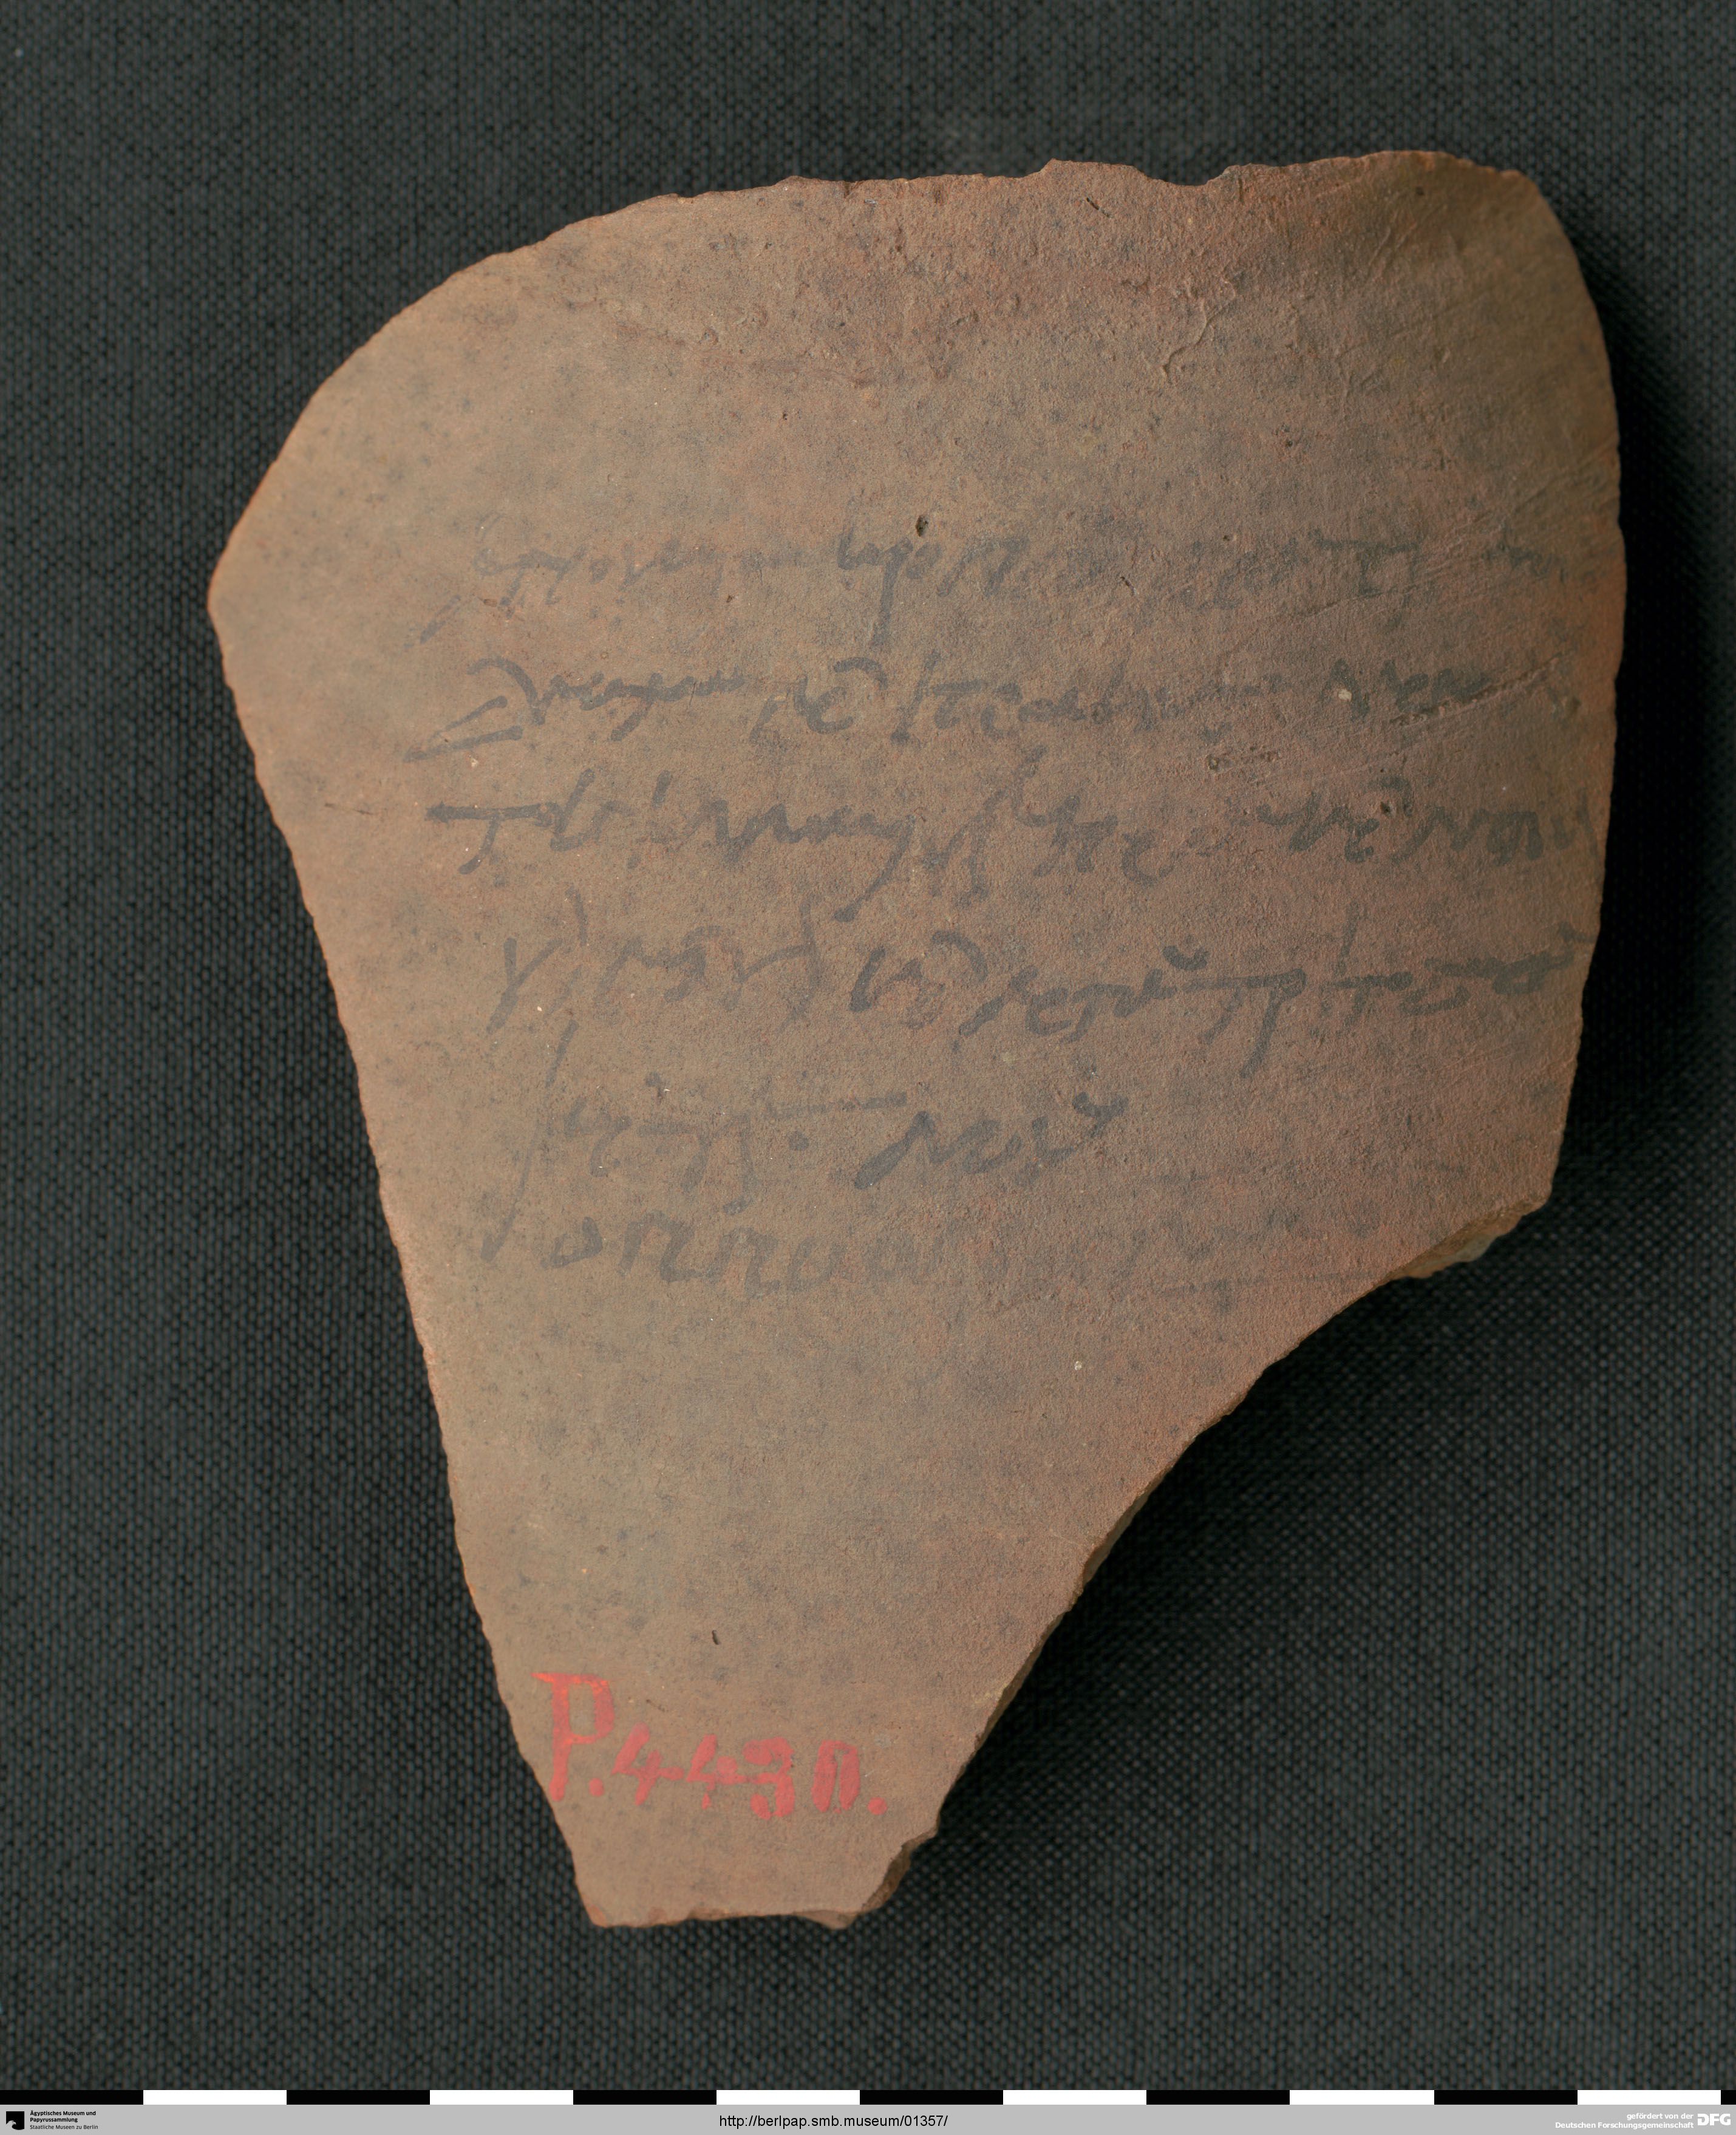 https://berlpap.smb.museum/Original/P_04430_S1_001.jpg (Ägyptisches Museum und Papyrussammlung, Staatliche Museen zu Berlin CC BY-NC-SA)